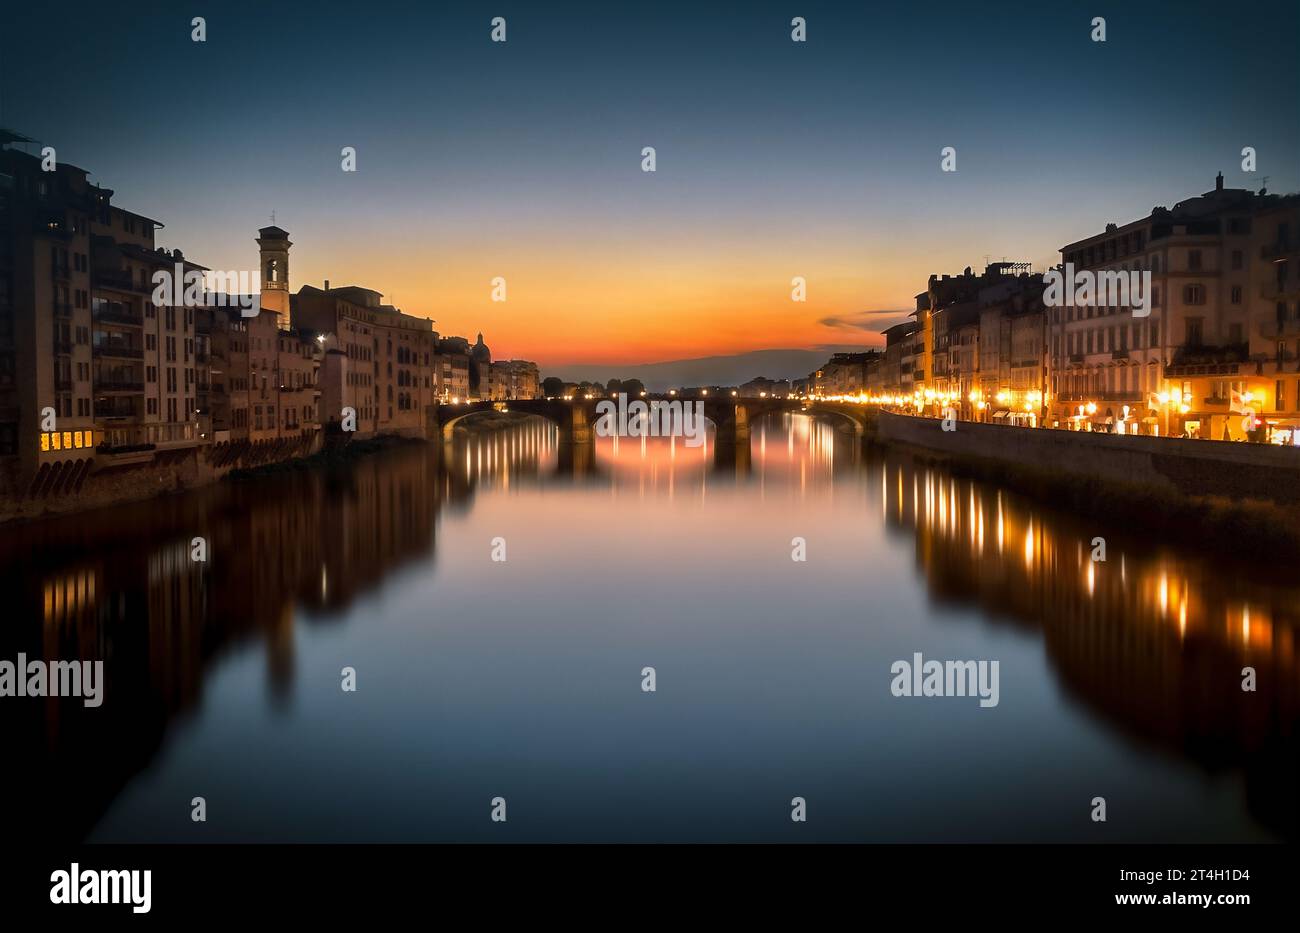 Belle vue sur le Ponte alla Carraia avec les couleurs chaudes du coucher de soleil reflété sur la rivière Arno. Vue relaxante et paisible Banque D'Images